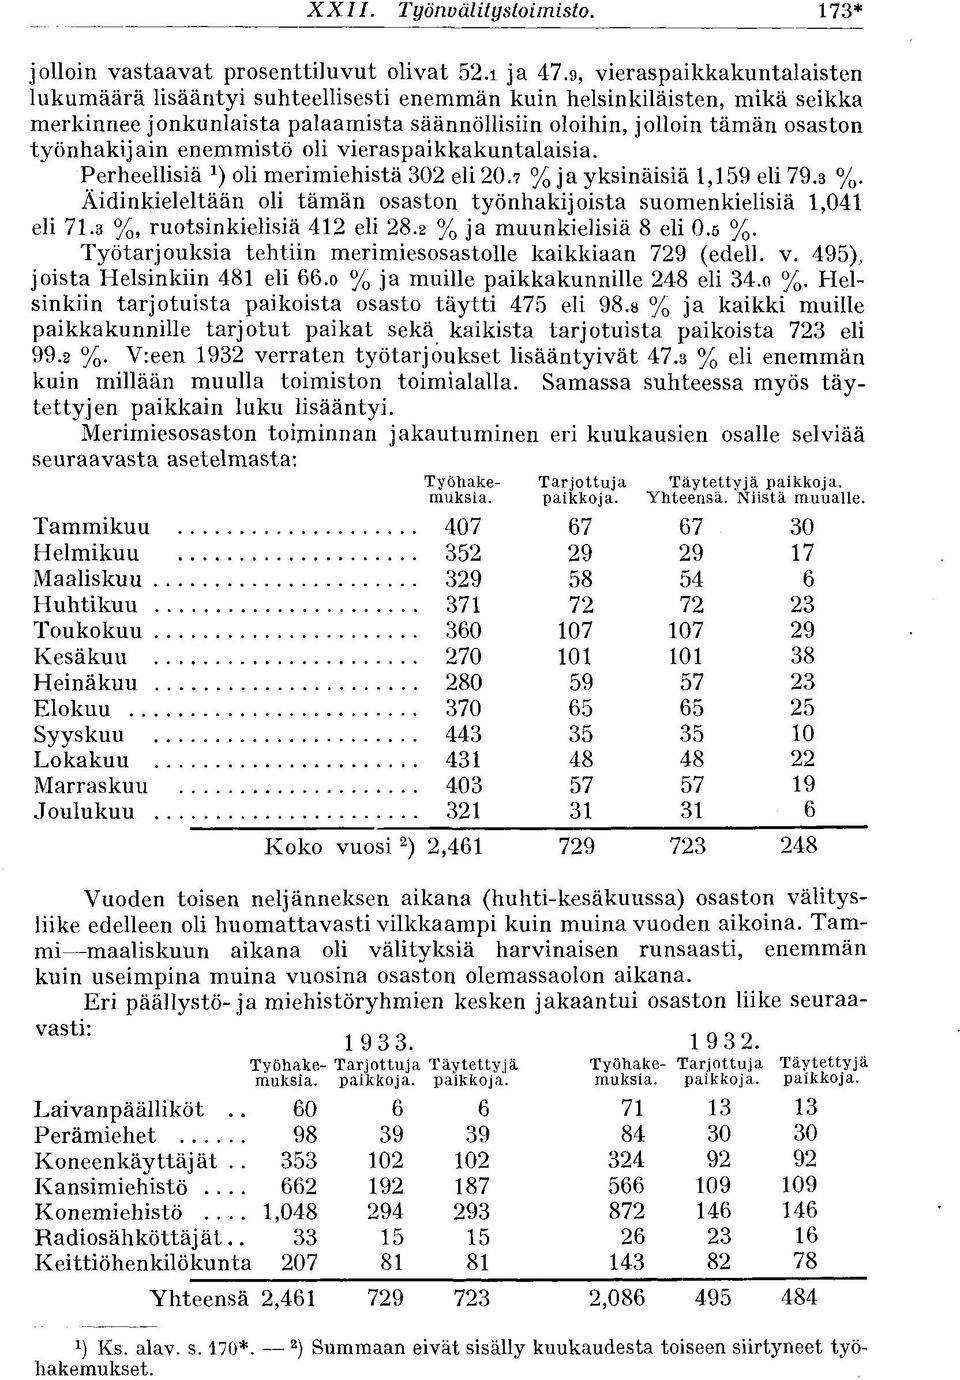 enemmistö oli vieraspaikkakuntalaisia. Perheellisiä oli merimiehistä 302 eli 20.7 % ja yksinäisiä 1,159 eli 79.3 %. Äidinkieleltään oli tämän osaston työnhakijoista suomenkielisiä 1,041 eli 71.